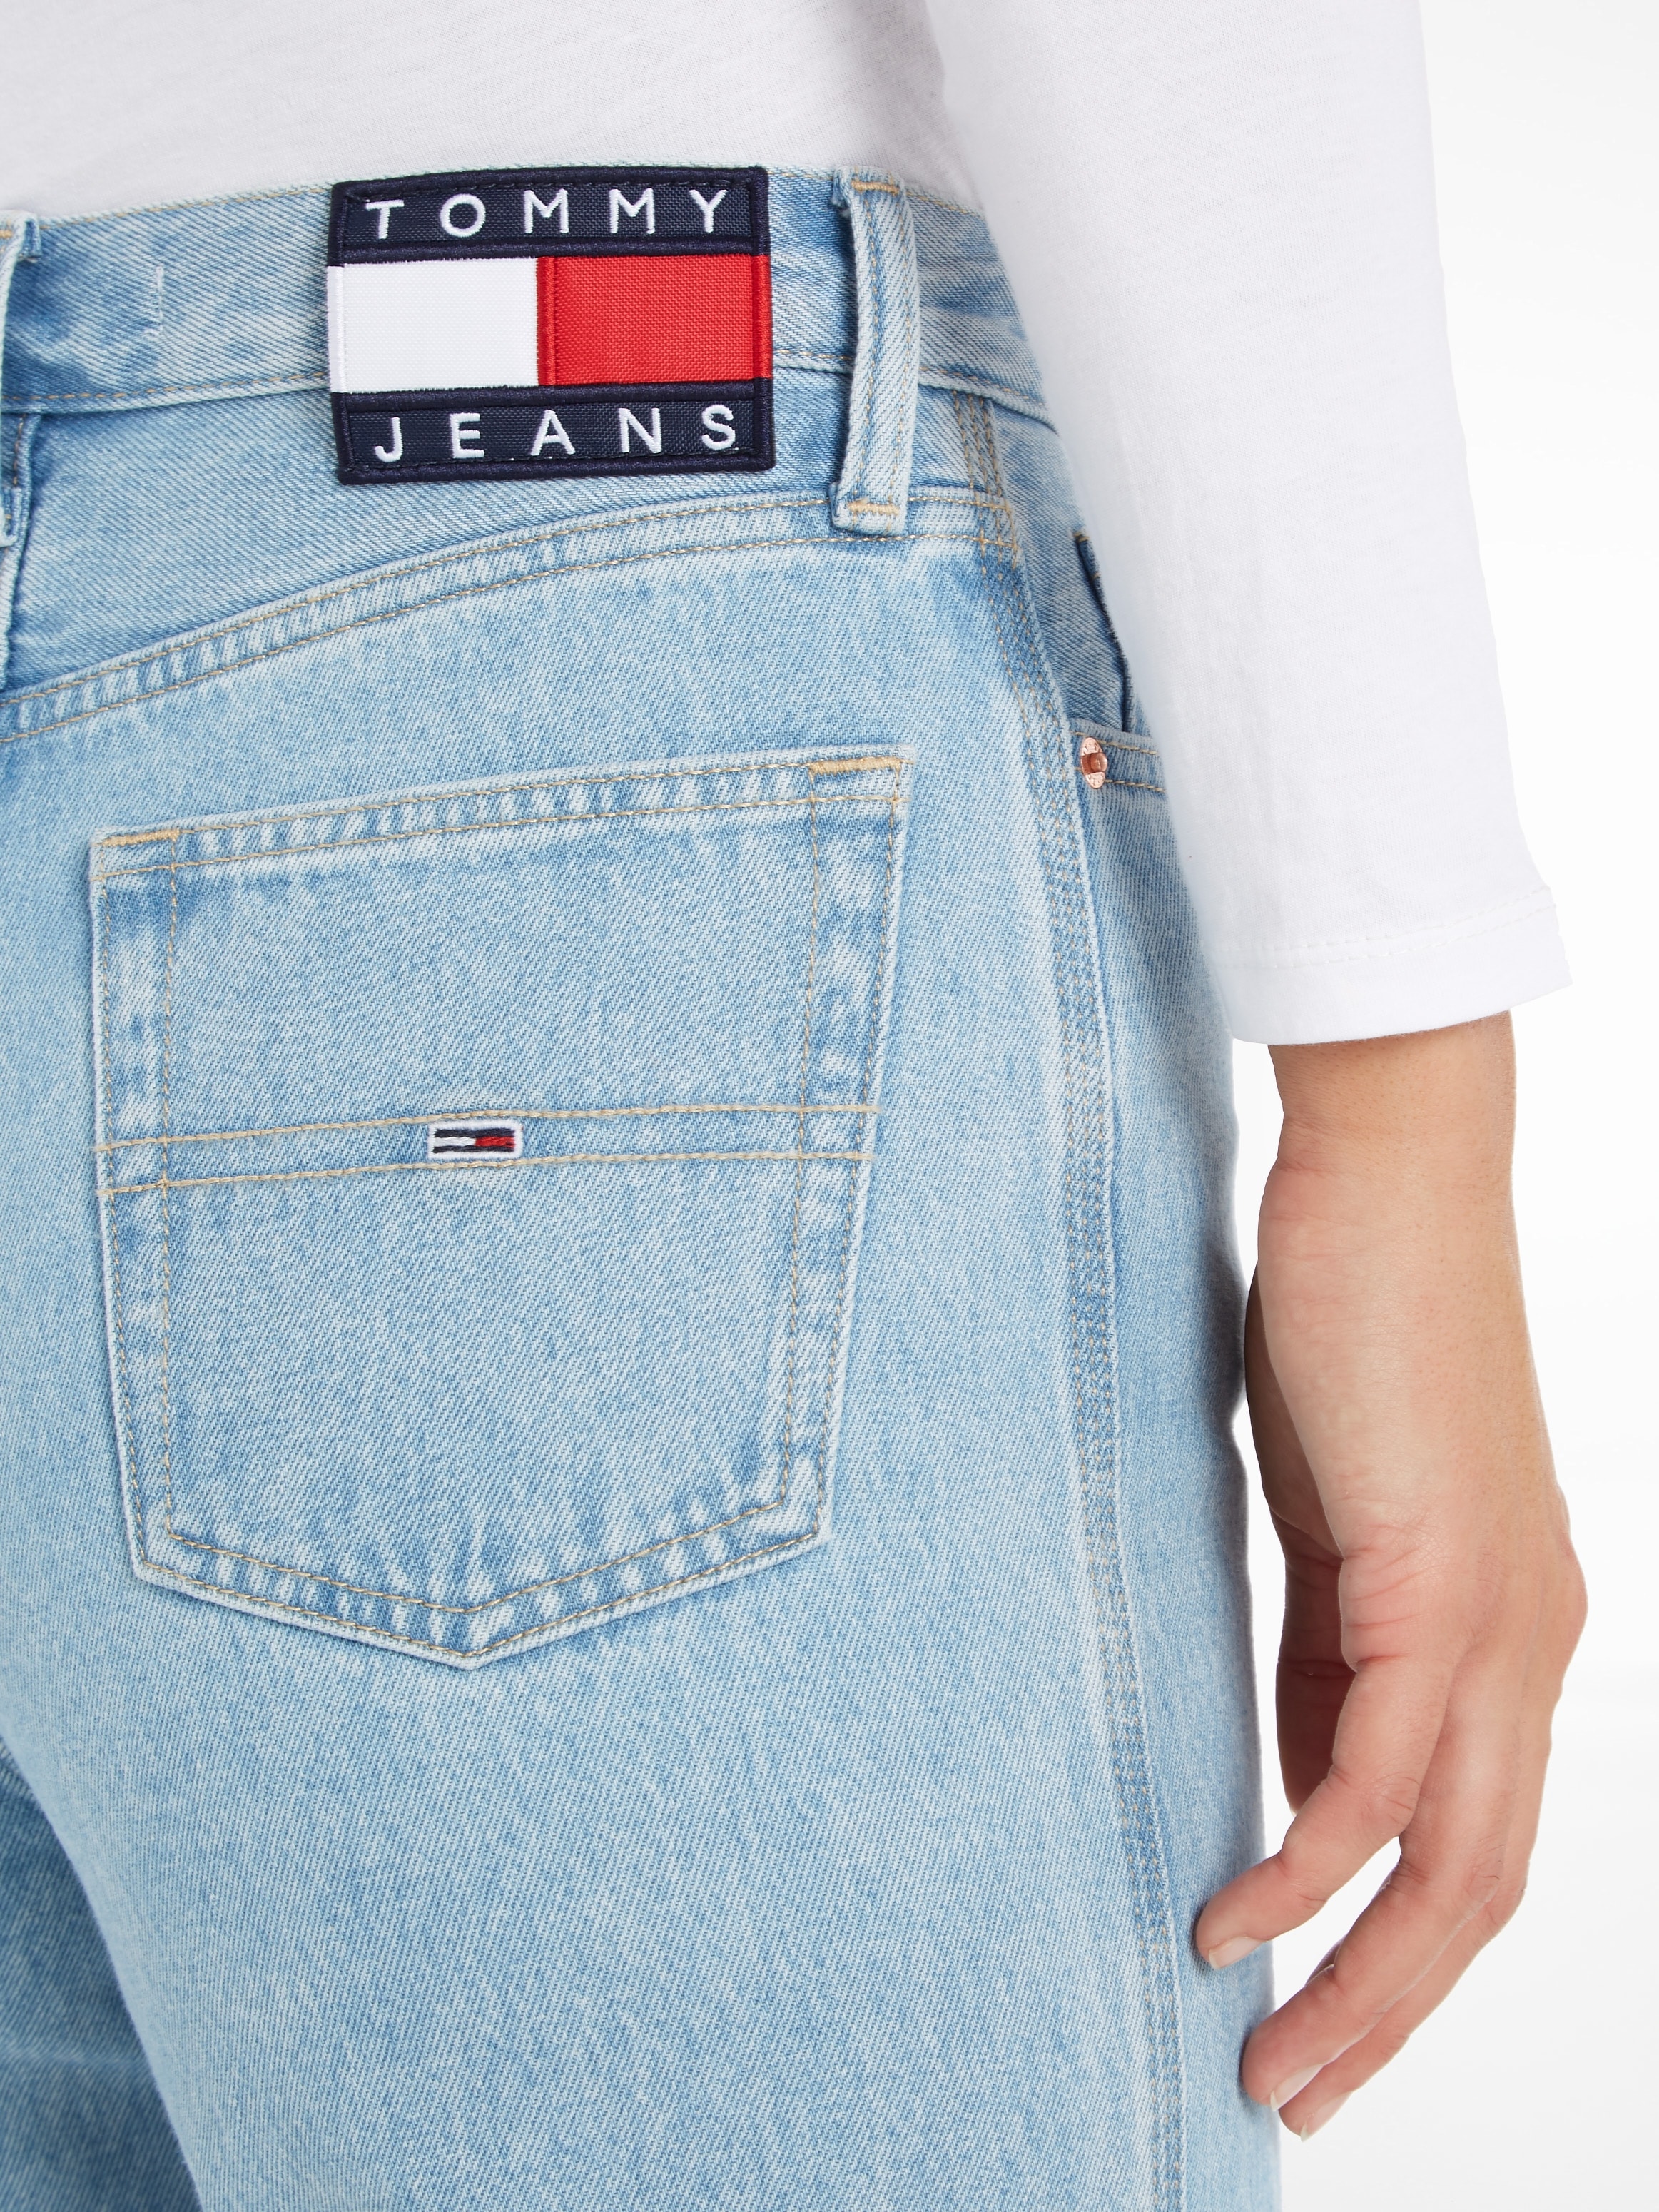 Tommy Jeans Weite | mit Jeans für BAUR Logobadges kaufen Jeans, Tommy